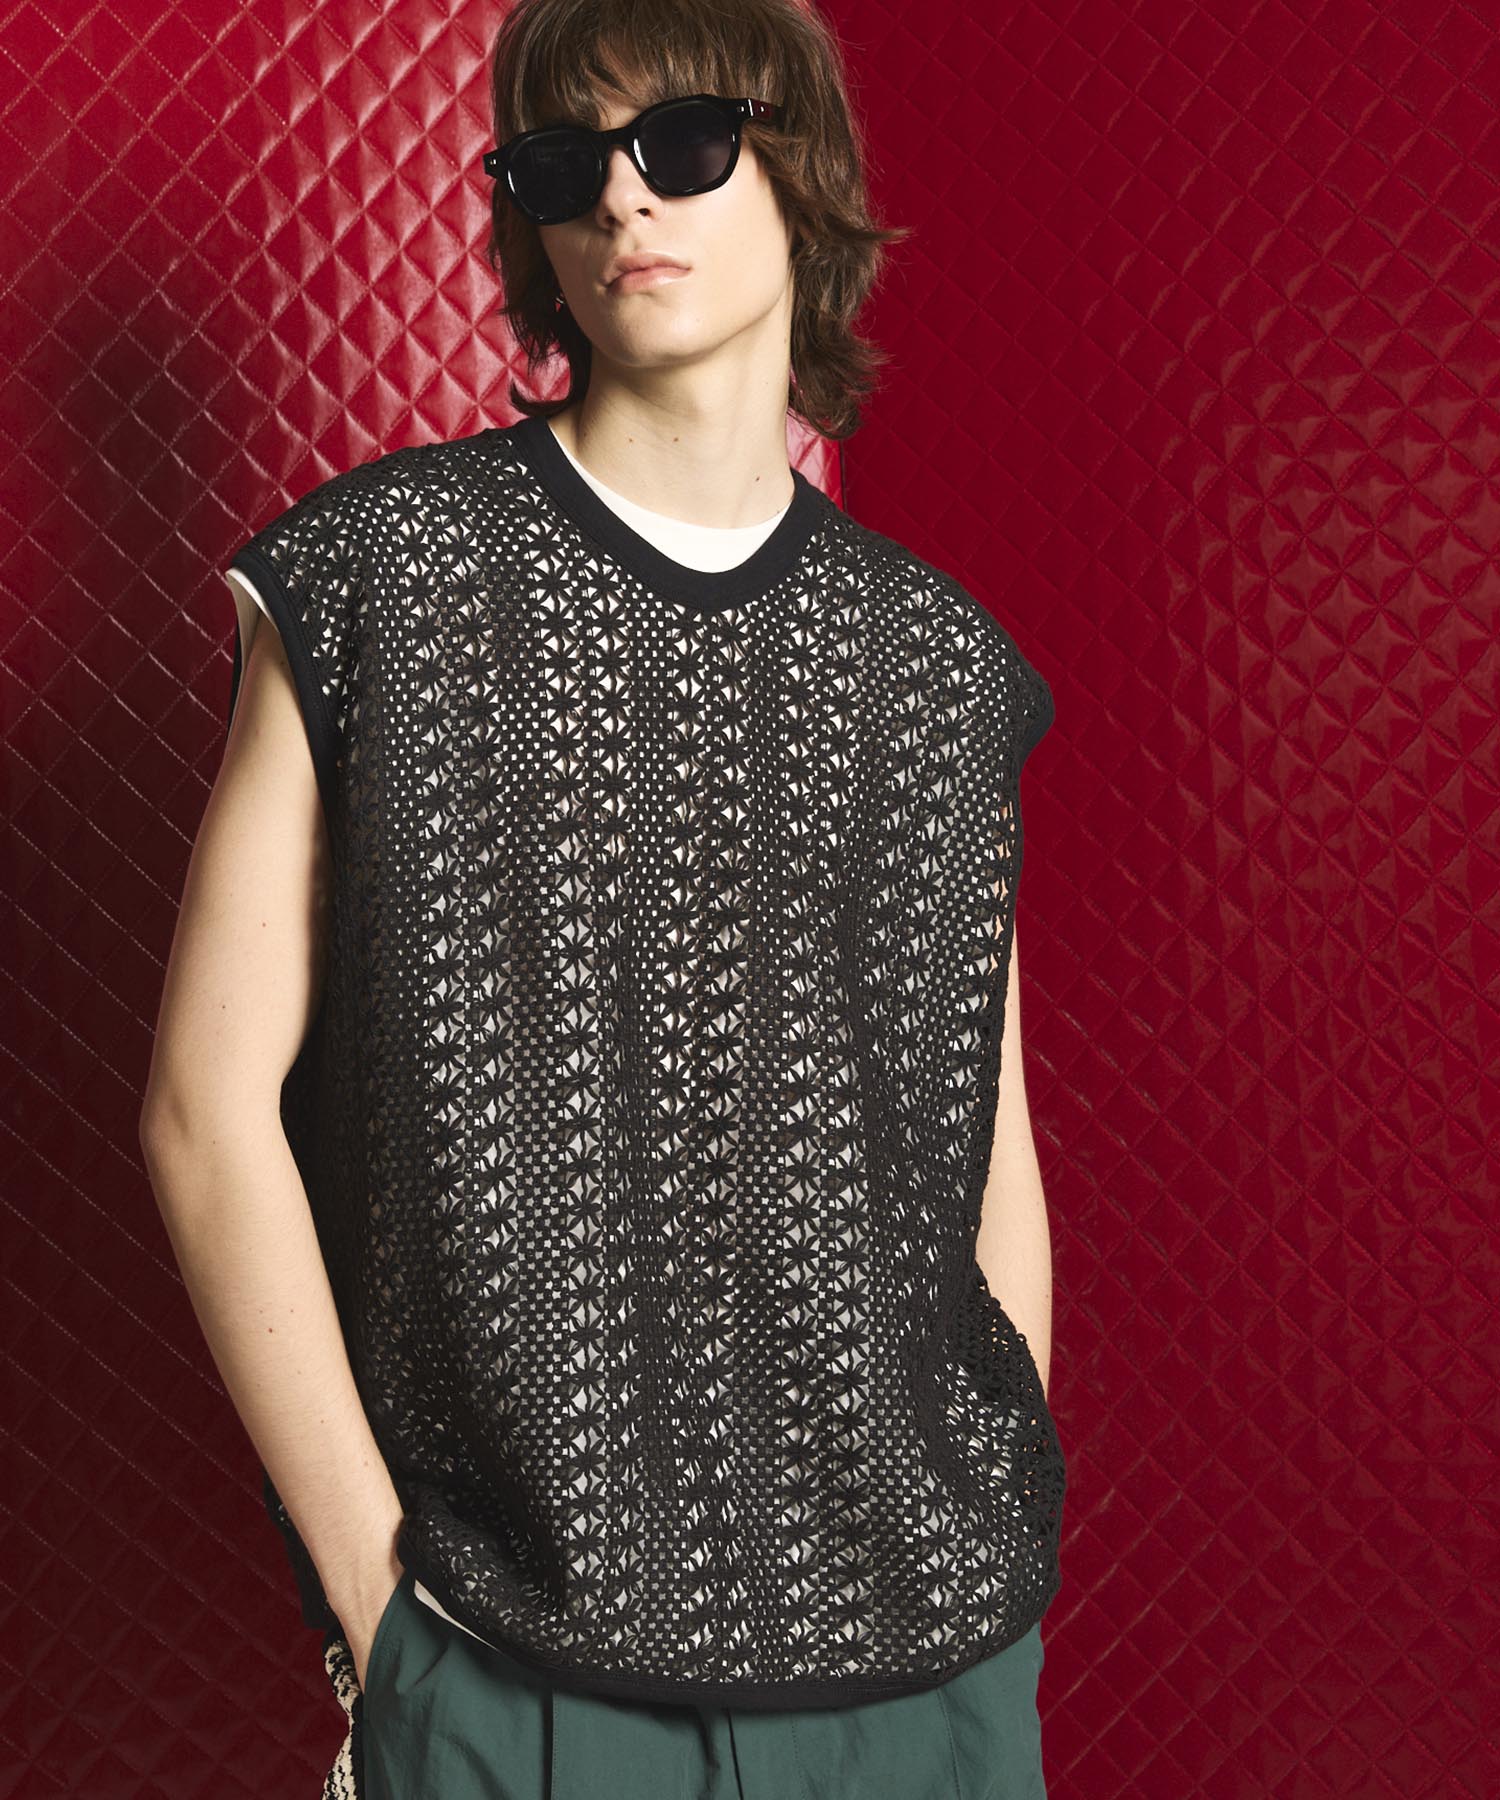 Crochet Like Mesh Prime-Over Sleevels T-Shirt